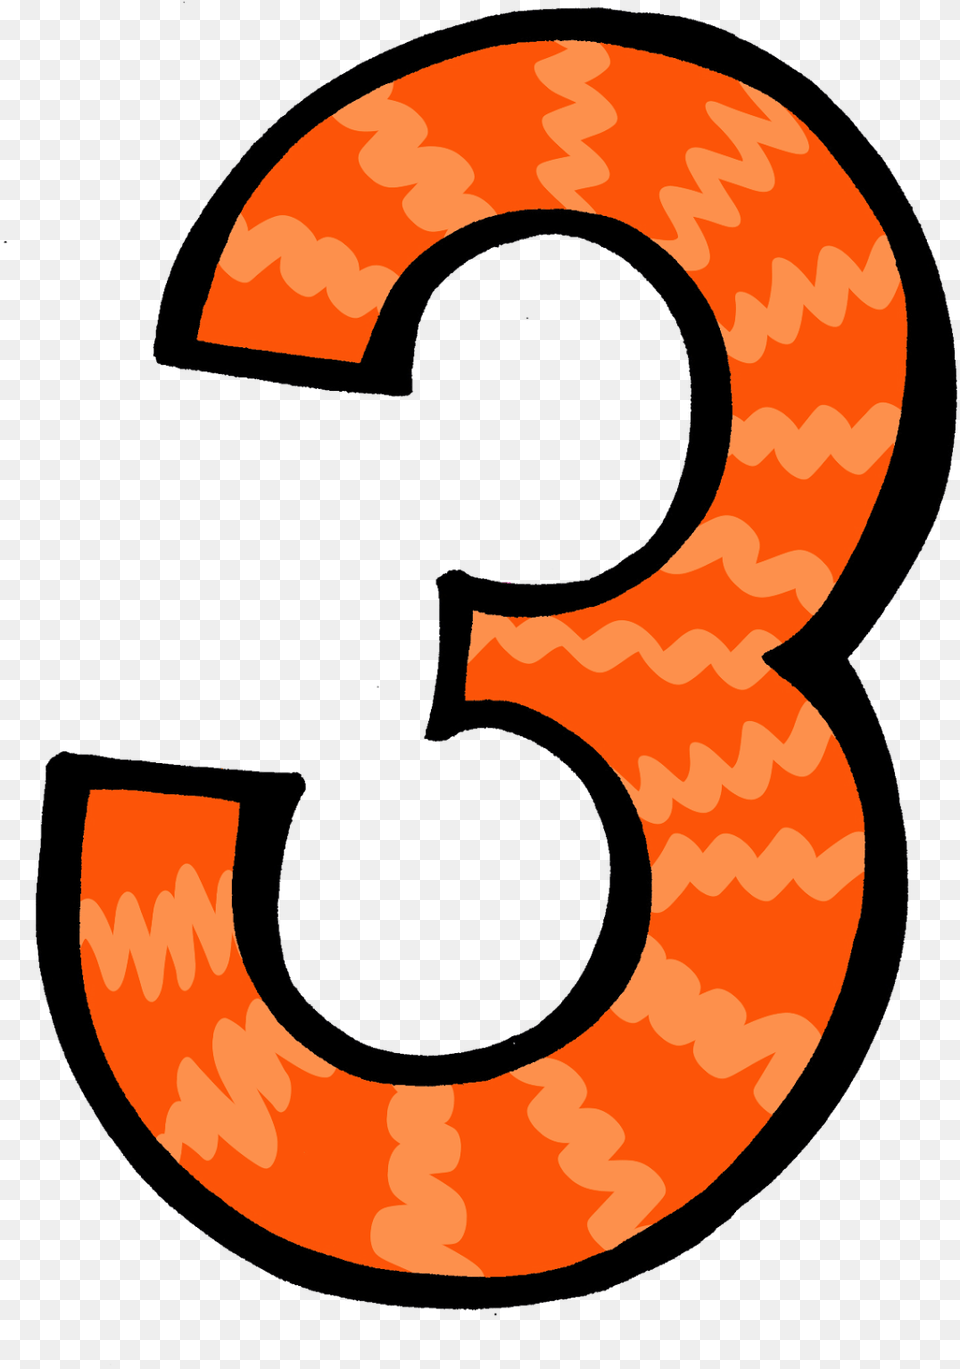 Similiar Orange Number 2 Clip Art Keywords Blue Clipart Number 3 Transparent Background, Symbol, Text Png Image